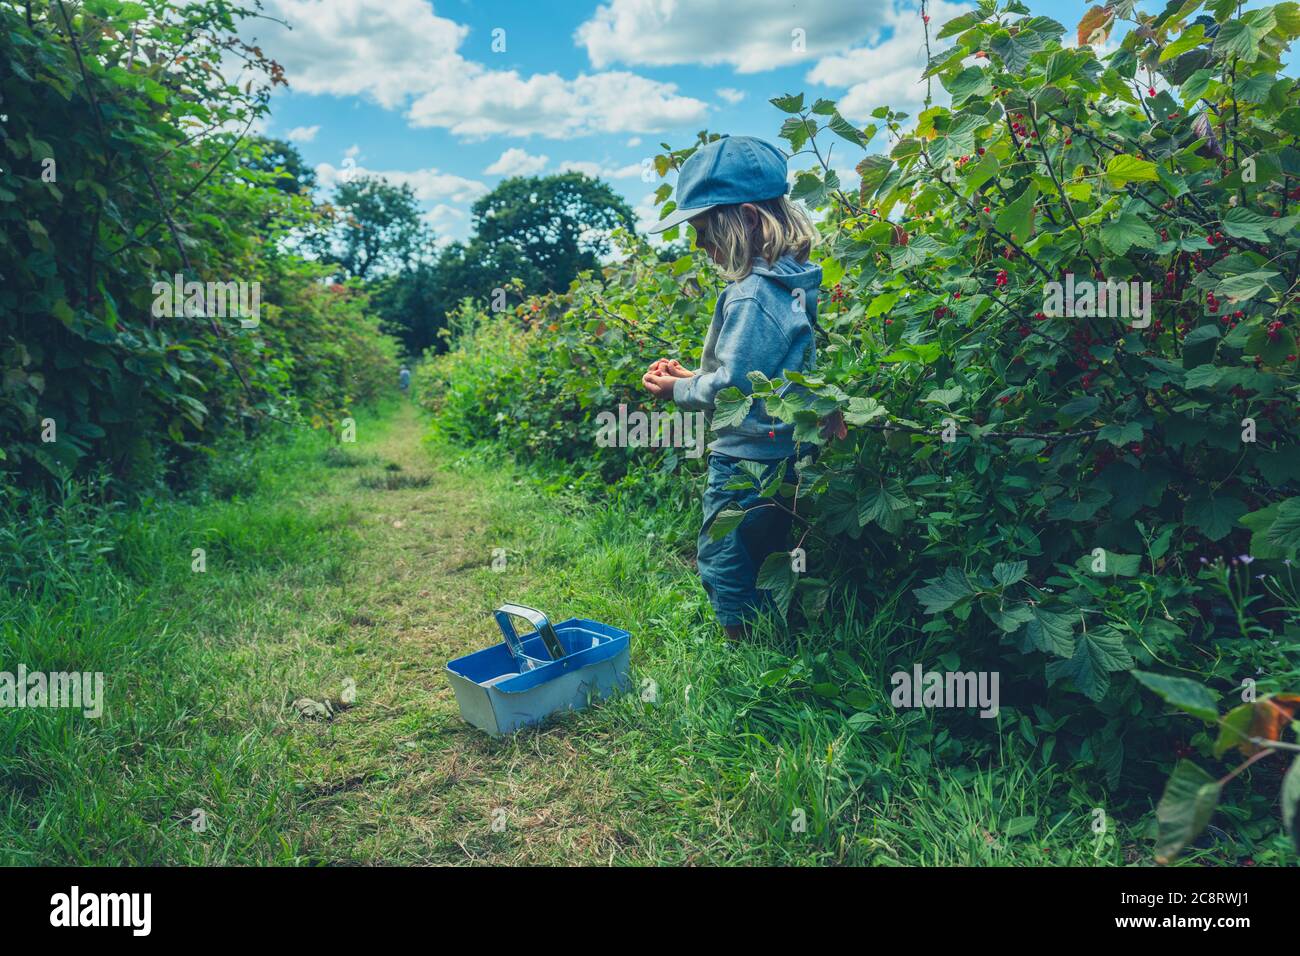 Un petit préchooler avec un panier est de cueillir des baies de buissons de fruits Banque D'Images